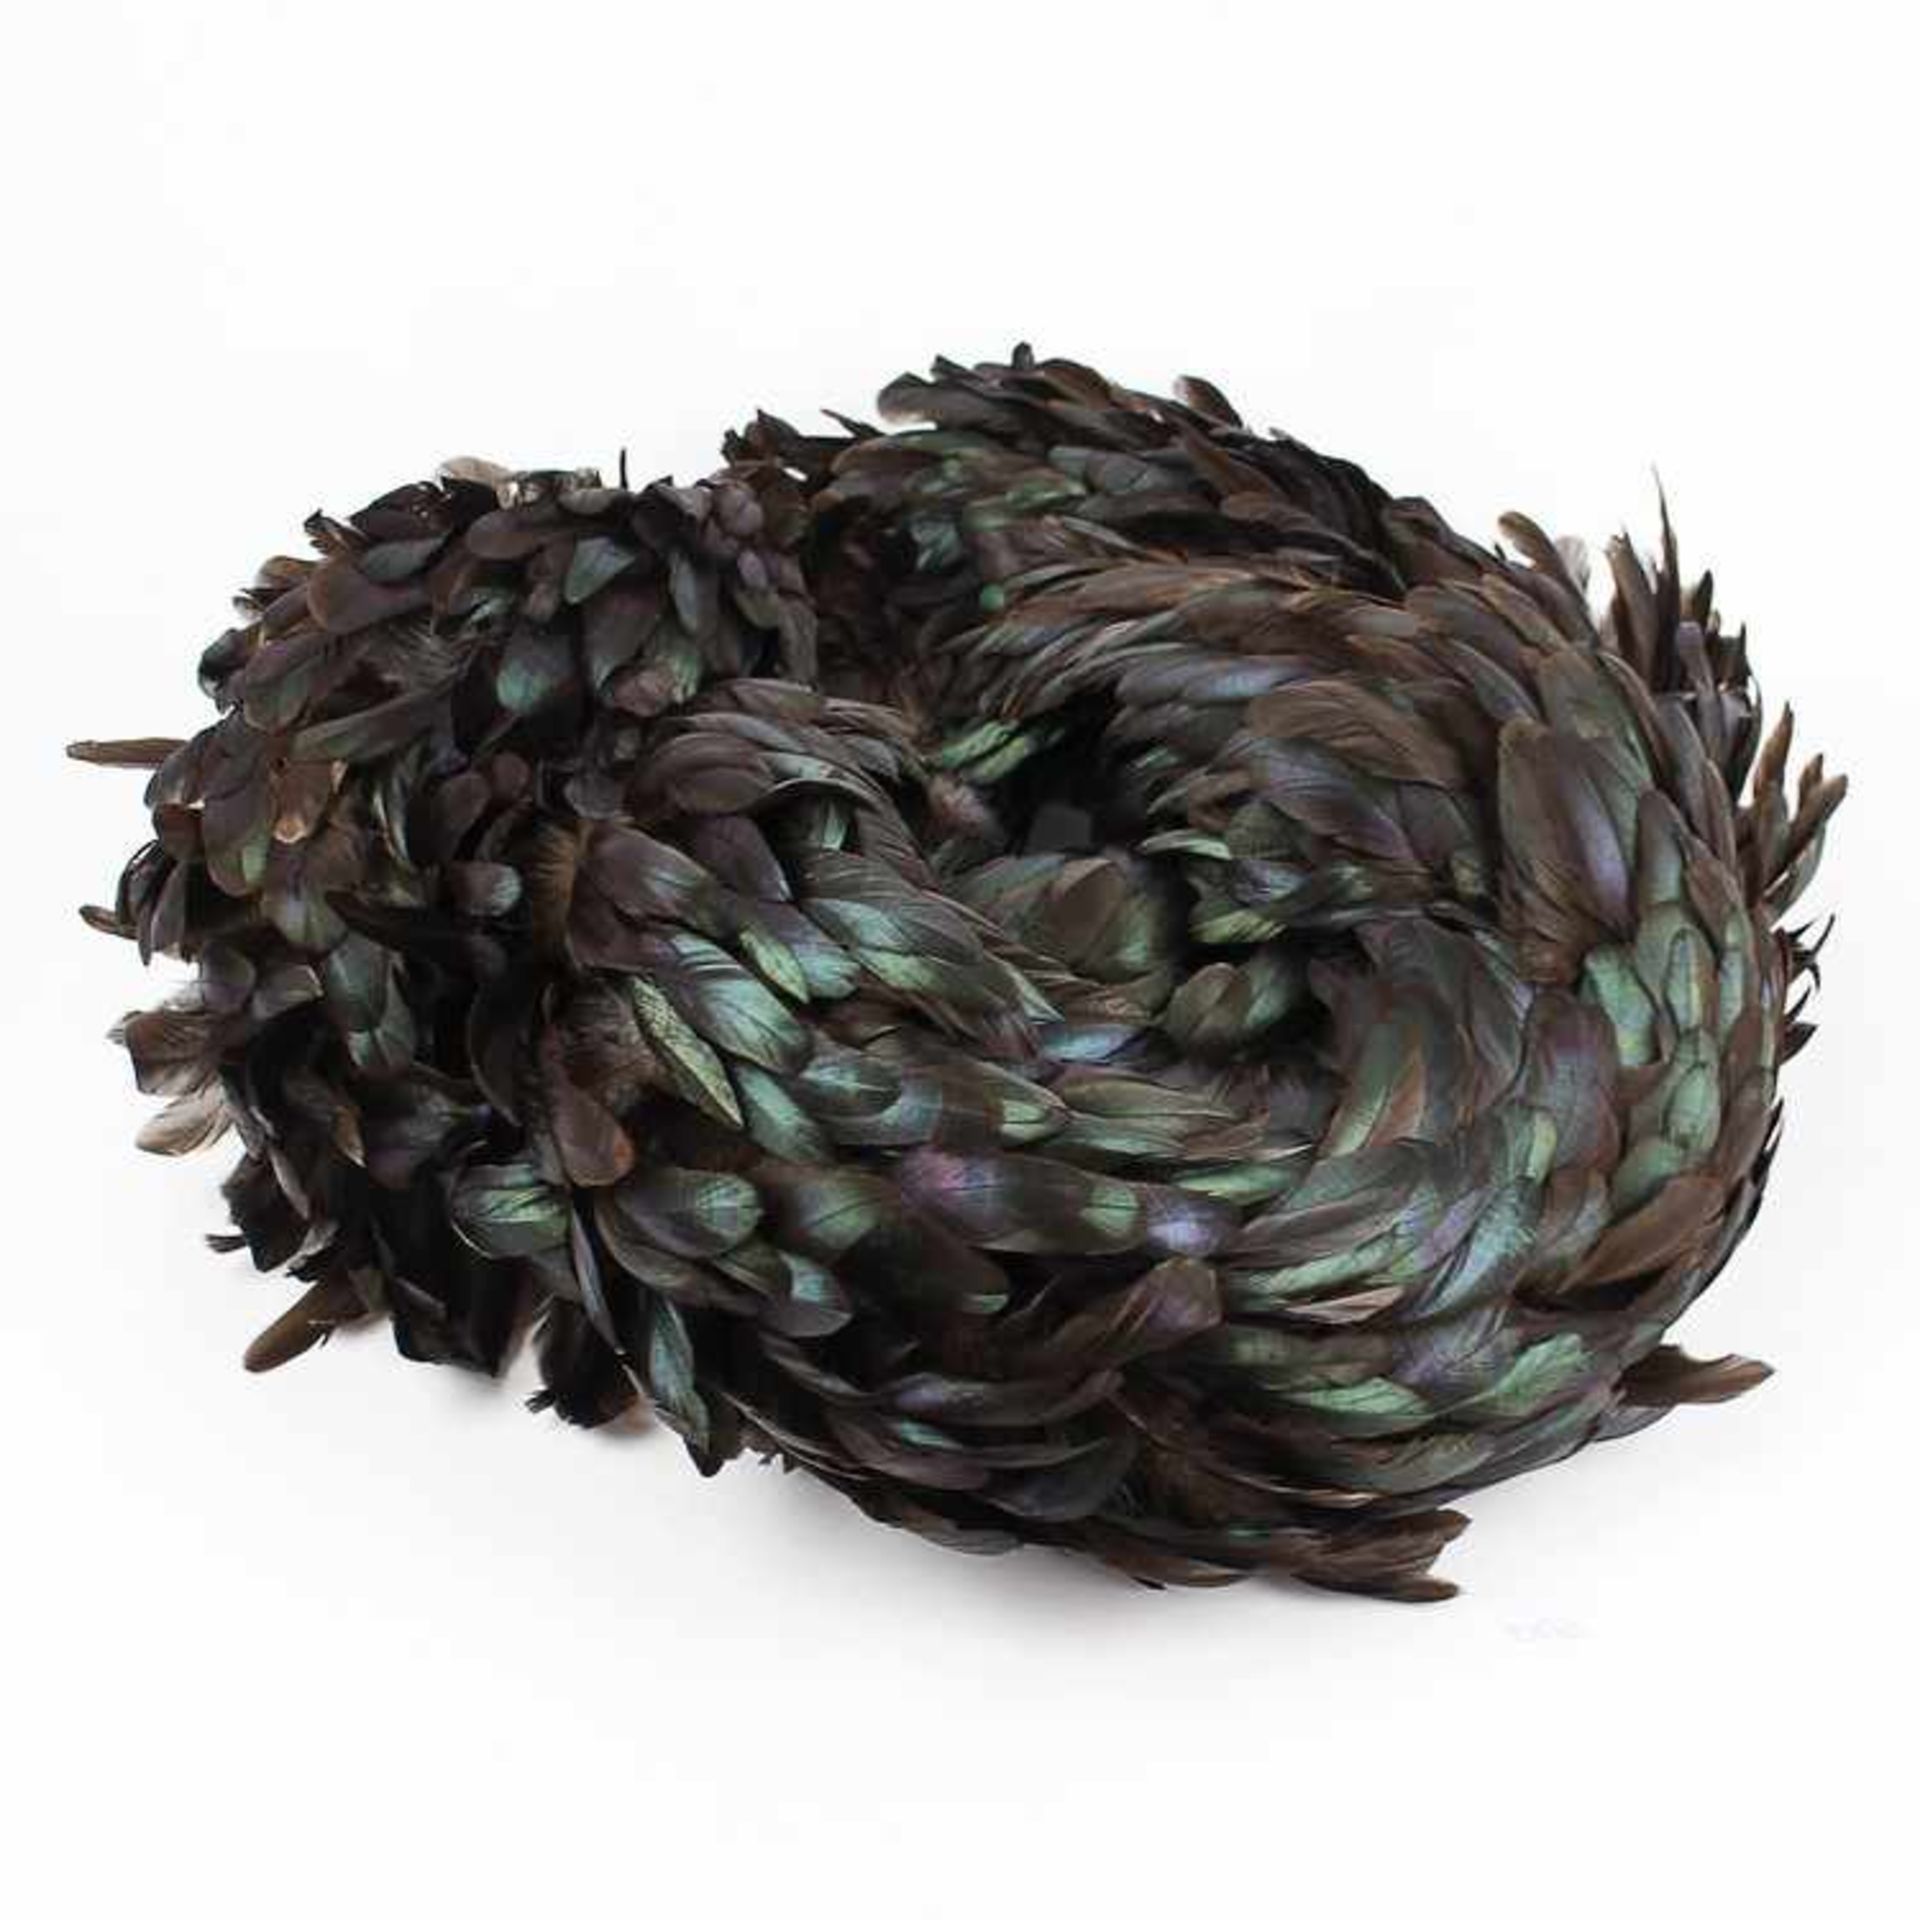 FederboaSchal aus Hahnenfedern, schwarzgrün, gut erhalten, L ca. 210 cm